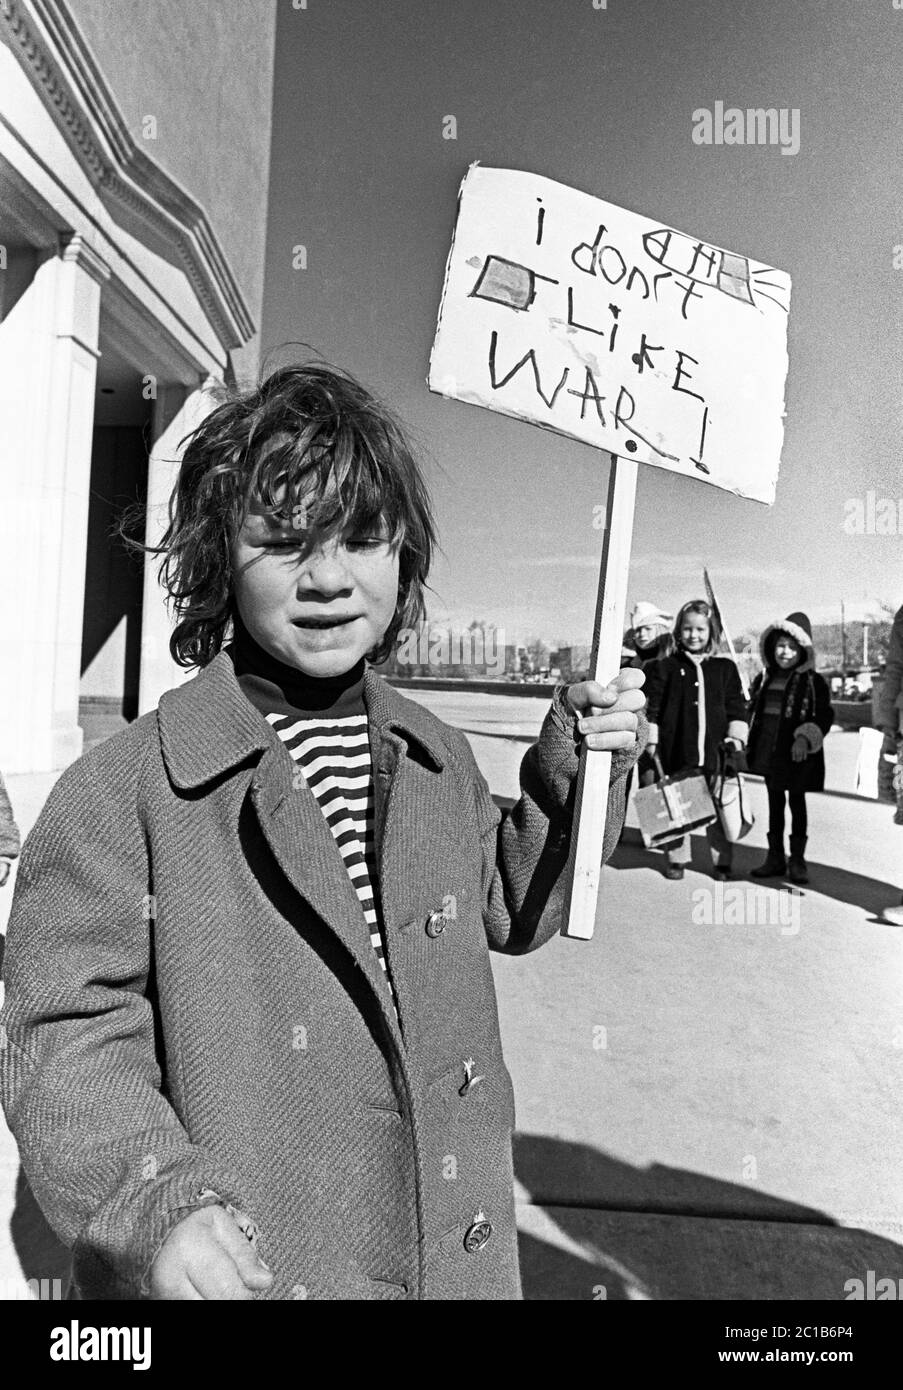 Porträt eines jungen Mannes mit einem Schild gegen den Vietnamkrieg, um 1973, Santa Fe, New Mexico, Gelände des Staatskapitolgebäudes. Stockfoto